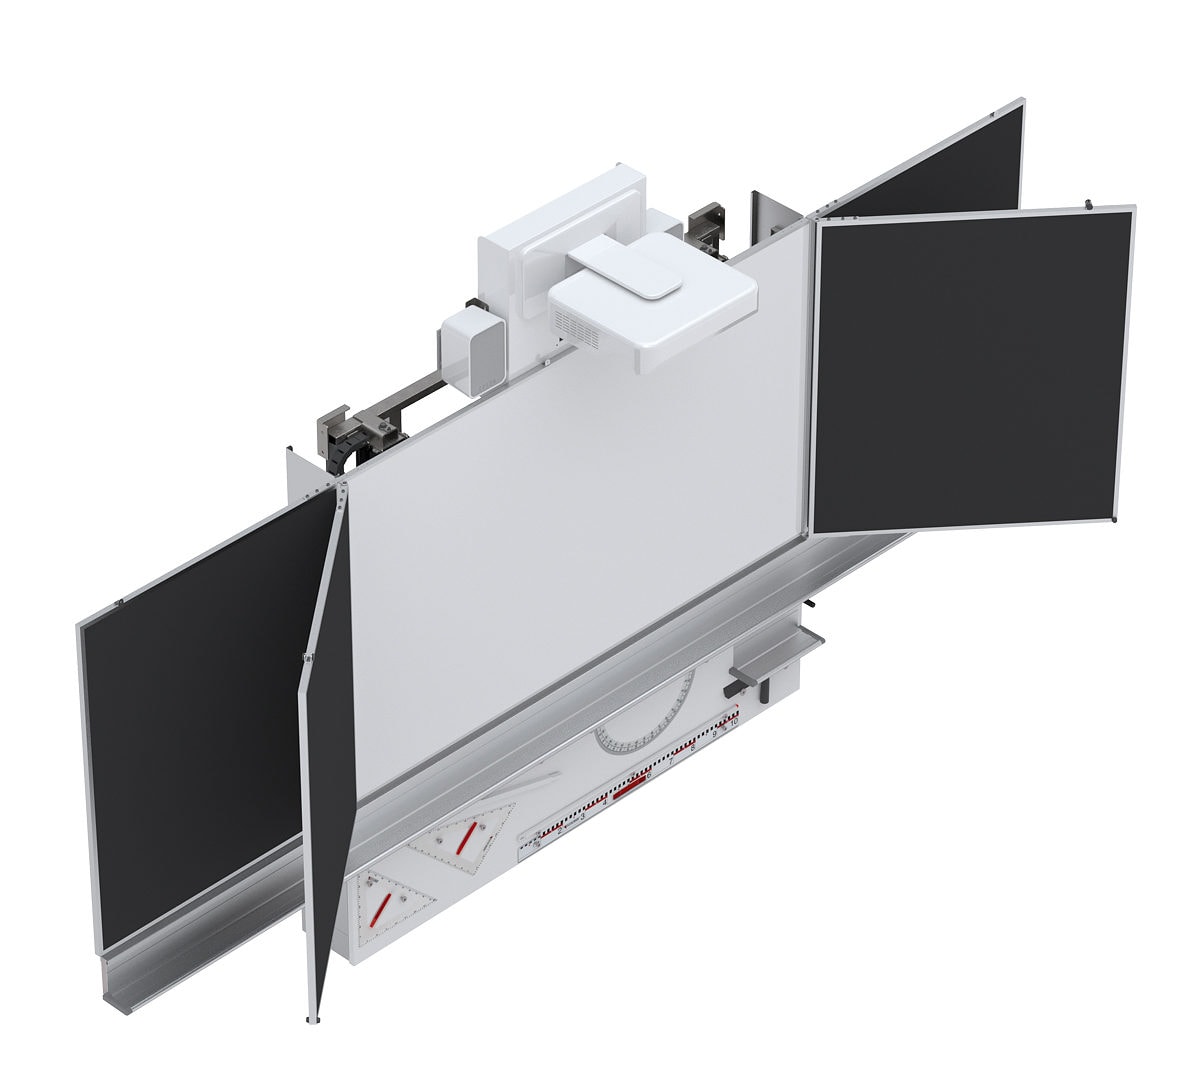 Beameranlage Wandtafelsystem aktive Tafelanlage Whiteboardfläche L+S design und technics made in Swiss